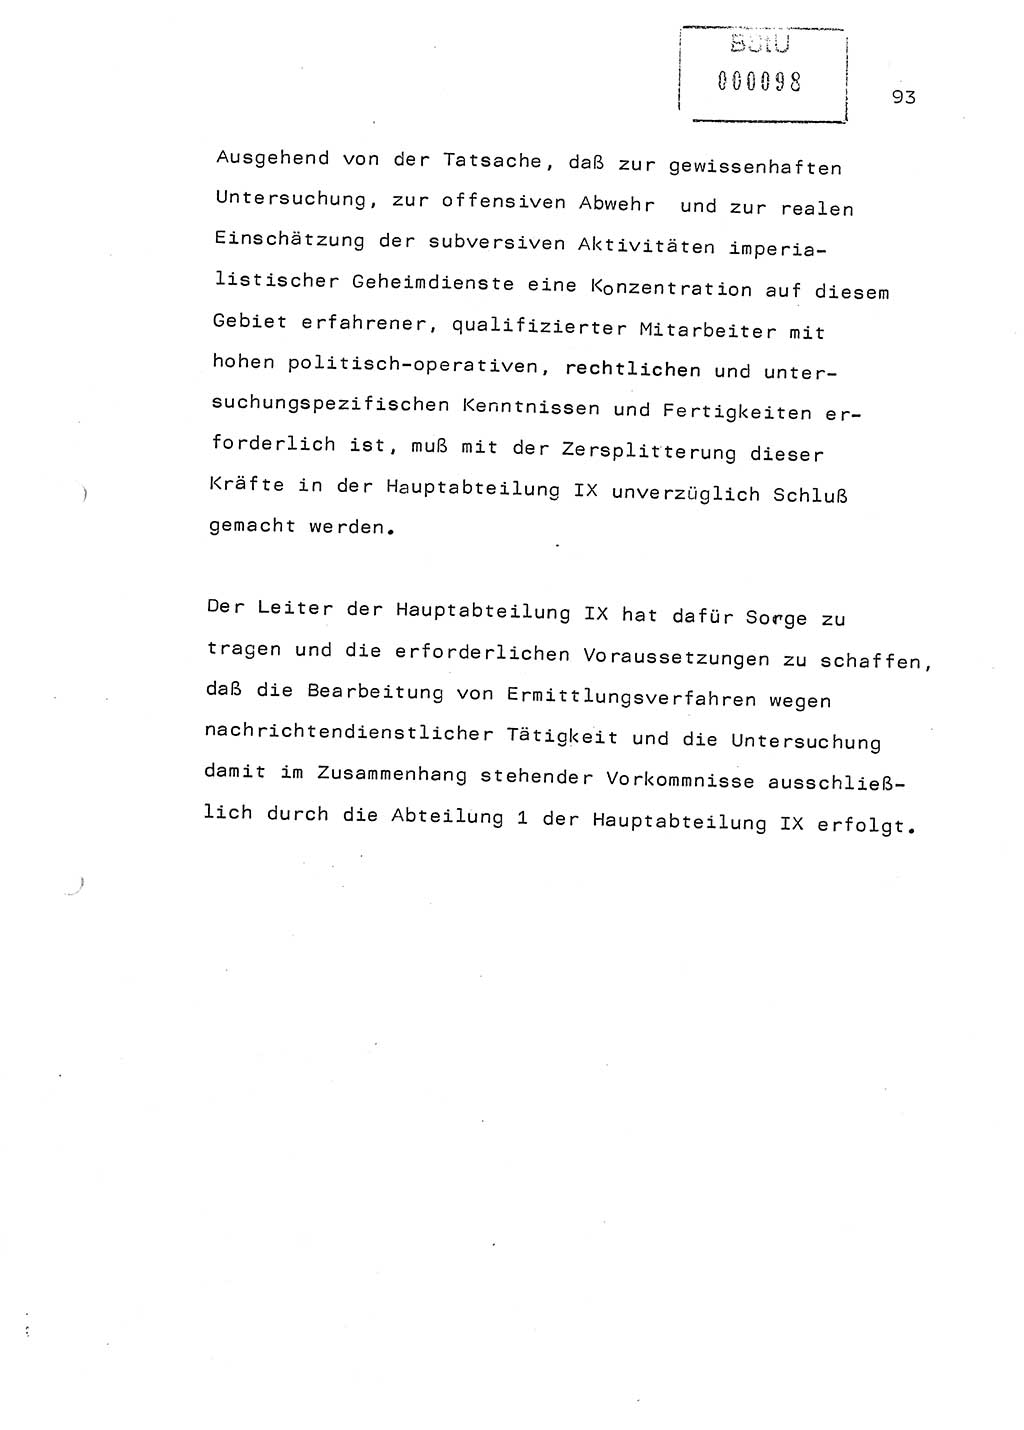 Referat (Generaloberst Erich Mielke) auf der Zentralen Dienstkonferenz am 24.5.1979 [Ministerium für Staatssicherheit (MfS), Deutsche Demokratische Republik (DDR), Der Minister], Berlin 1979, Seite 93 (Ref. DK DDR MfS Min. /79 1979, S. 93)